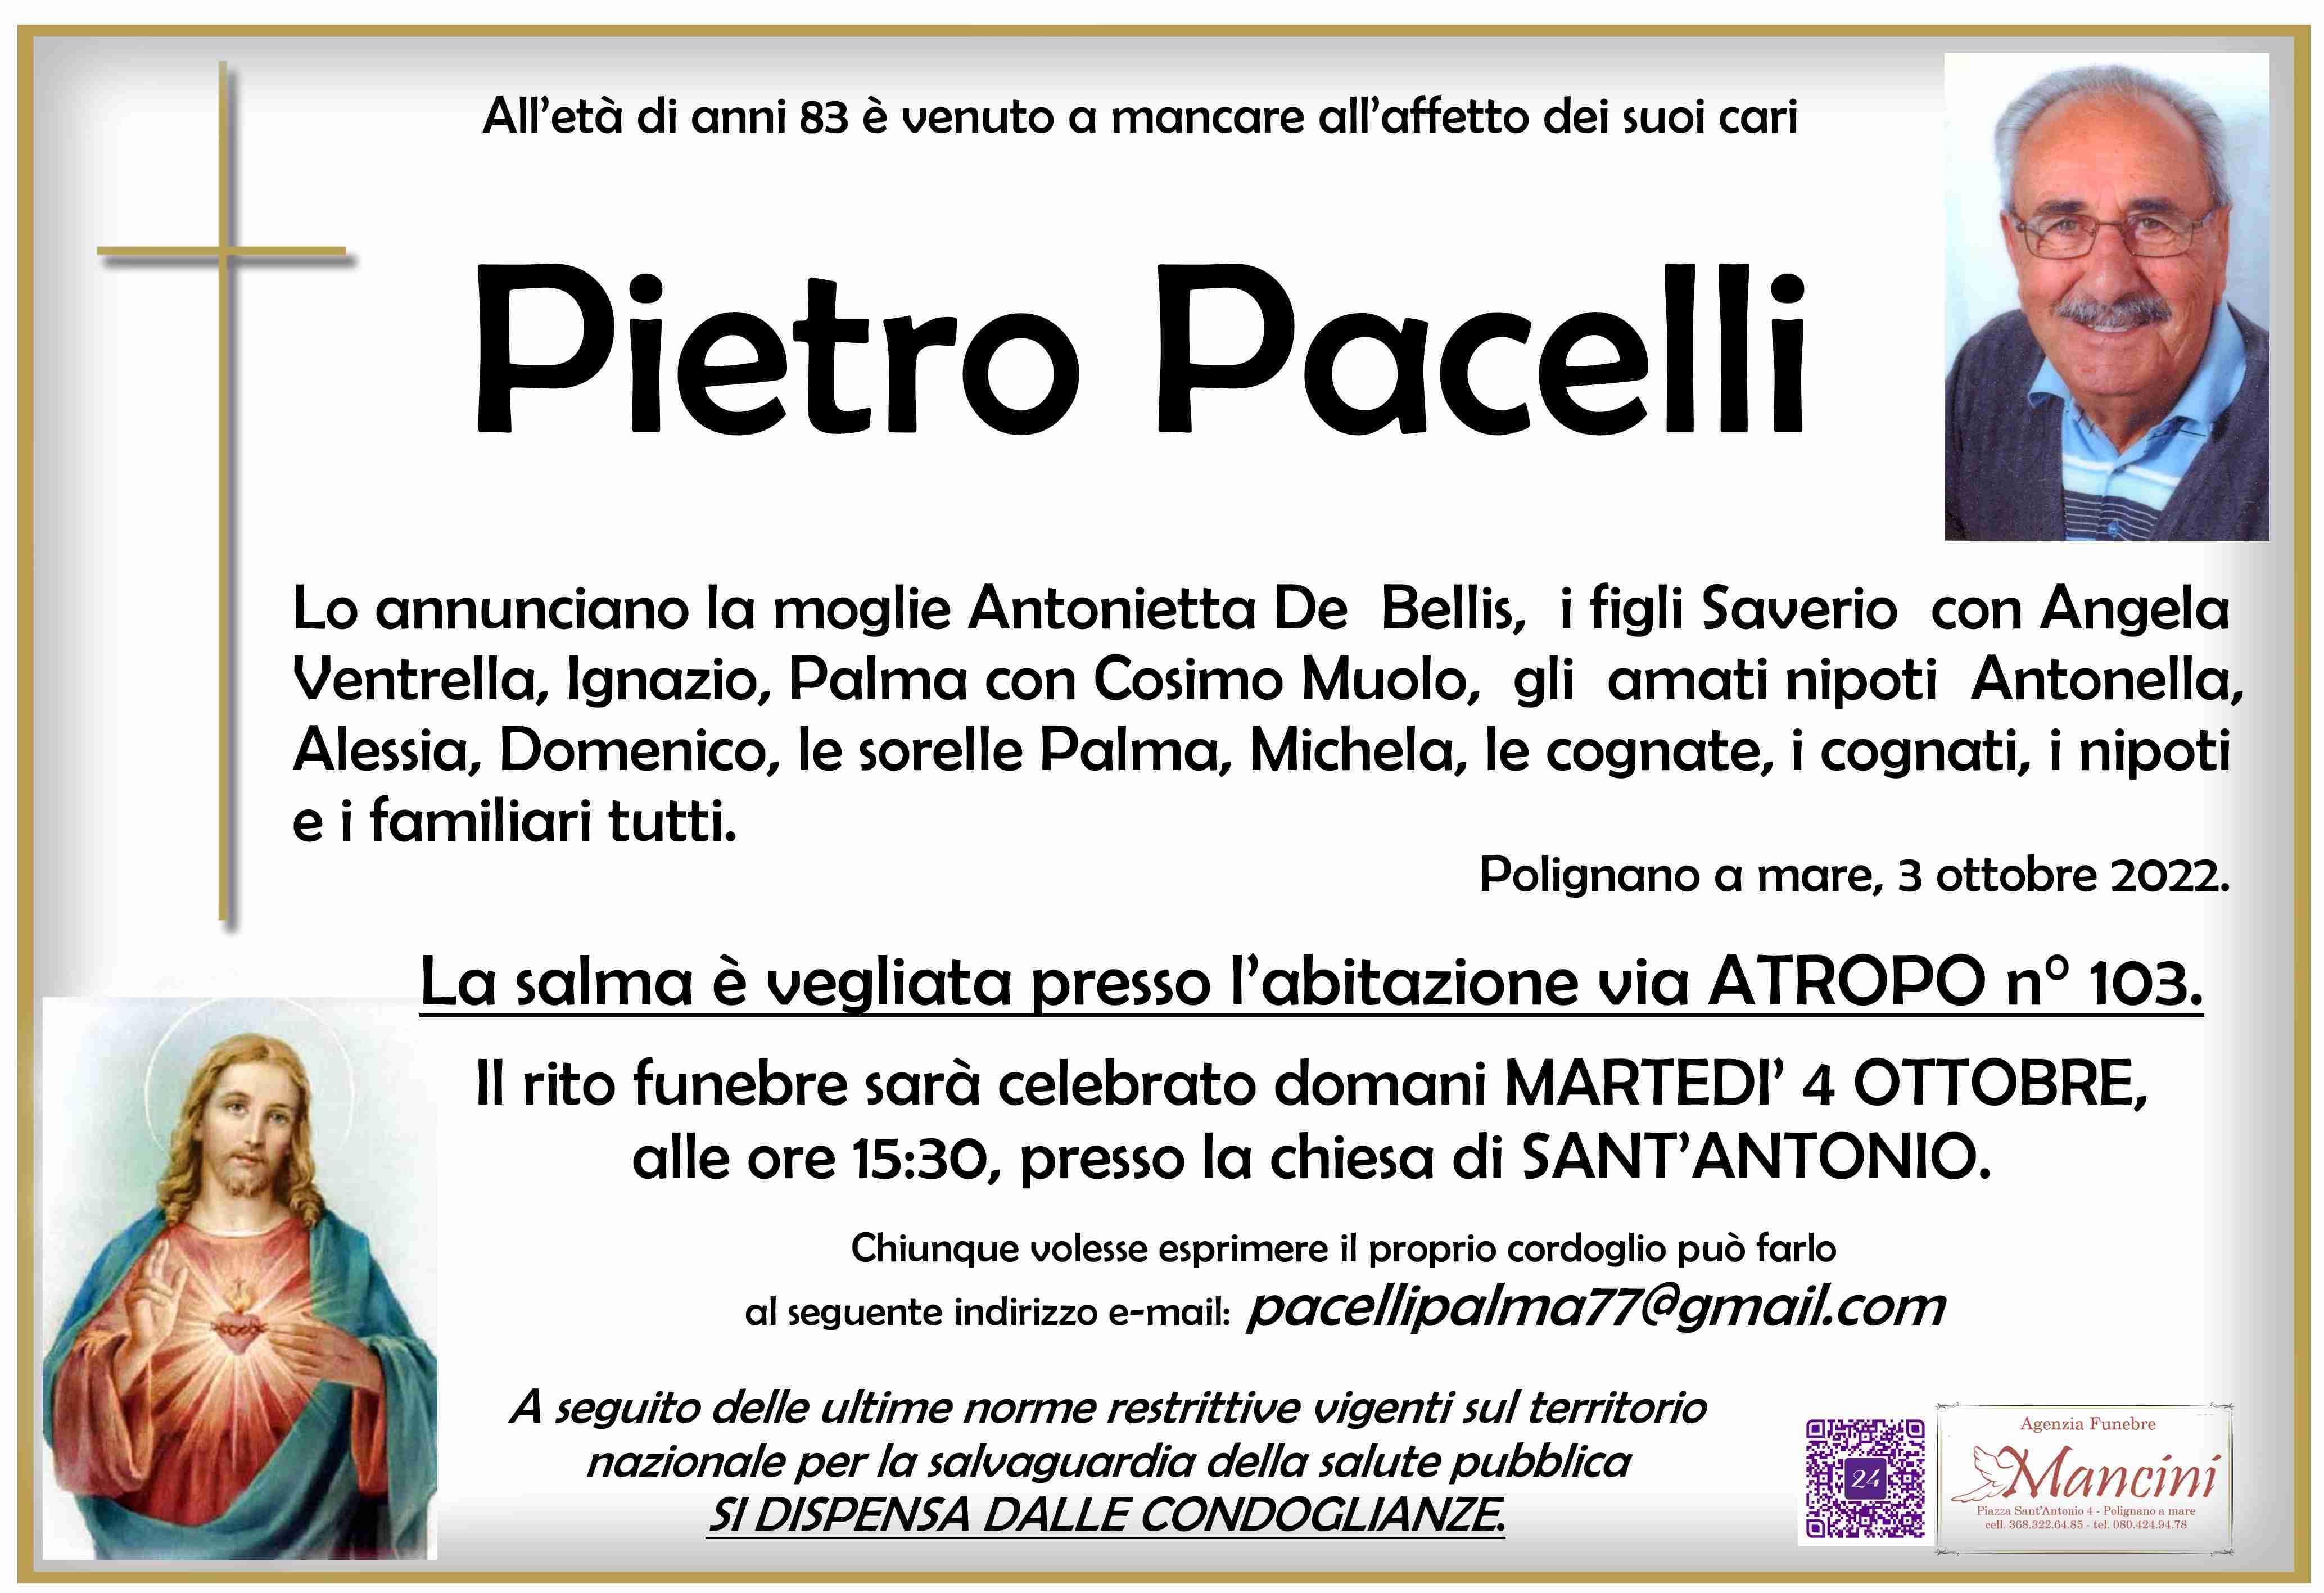 Pietro Pacelli